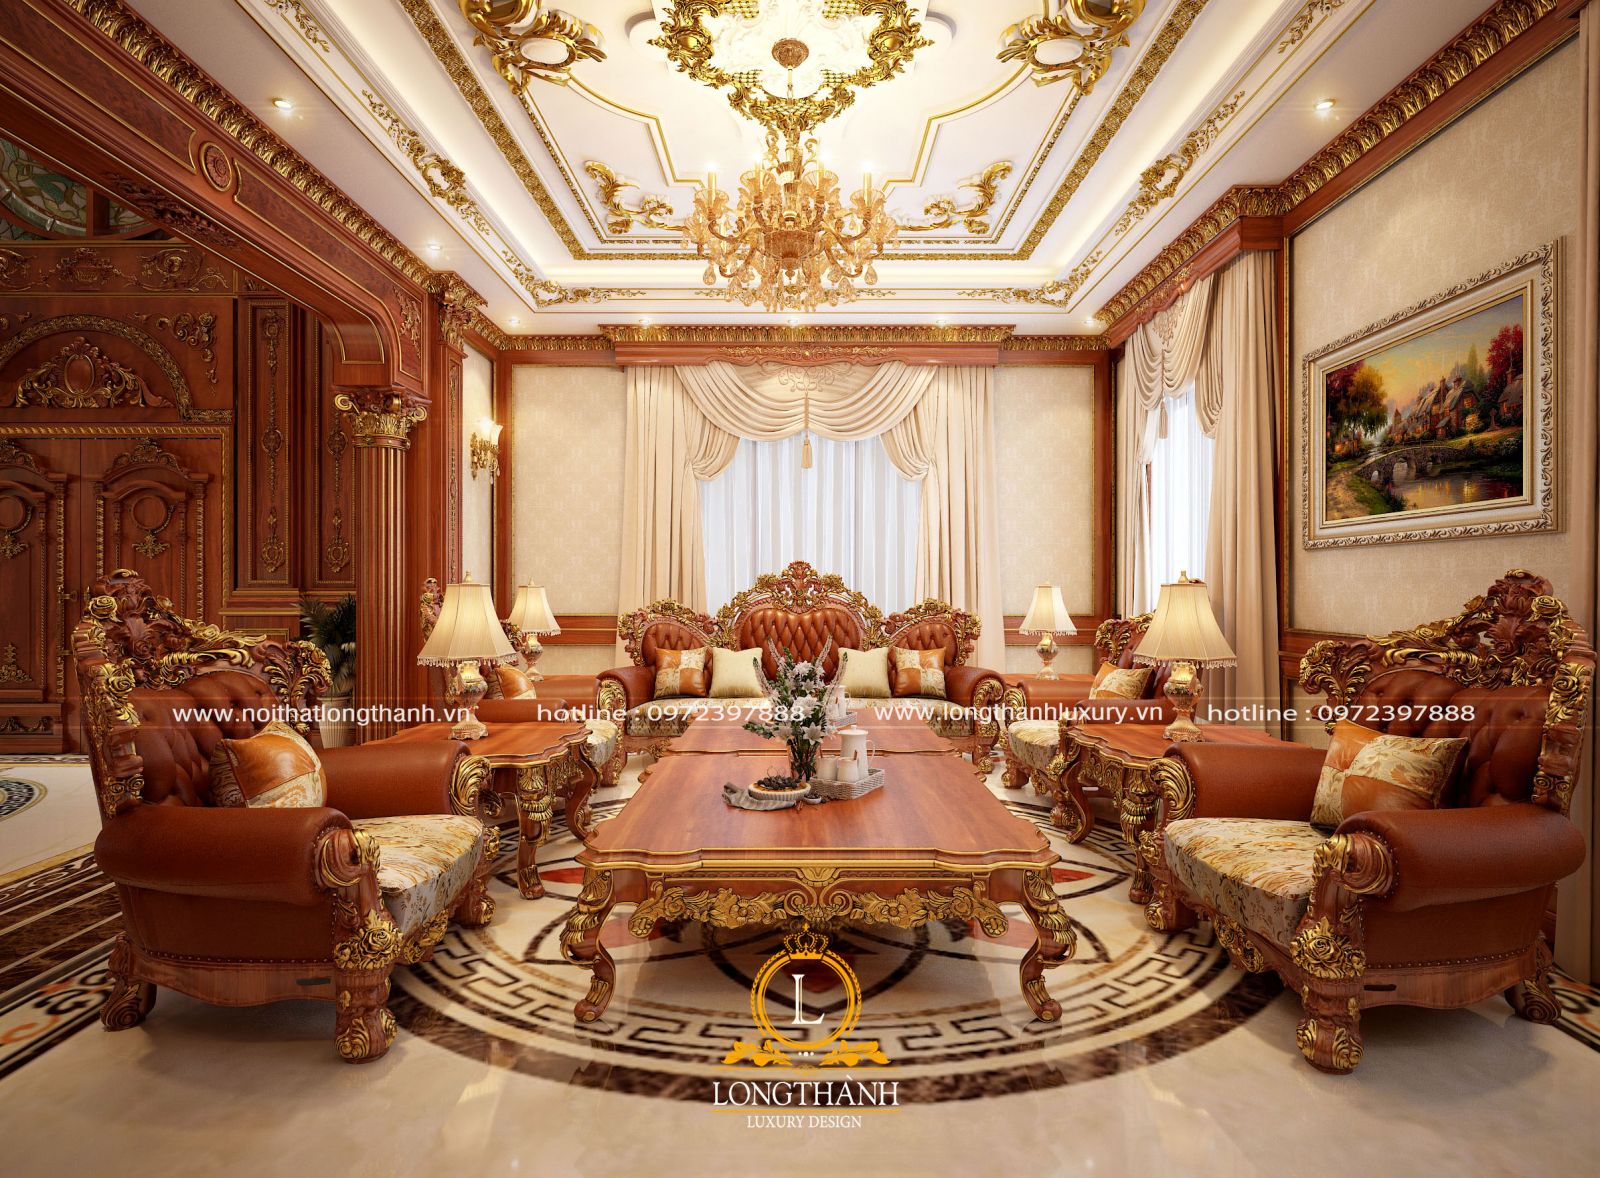 Bộ sofa mạ vàng lộng lẫy và sang trọng được lựa chọn sử dụng trong không gian phòng khách biệt thự